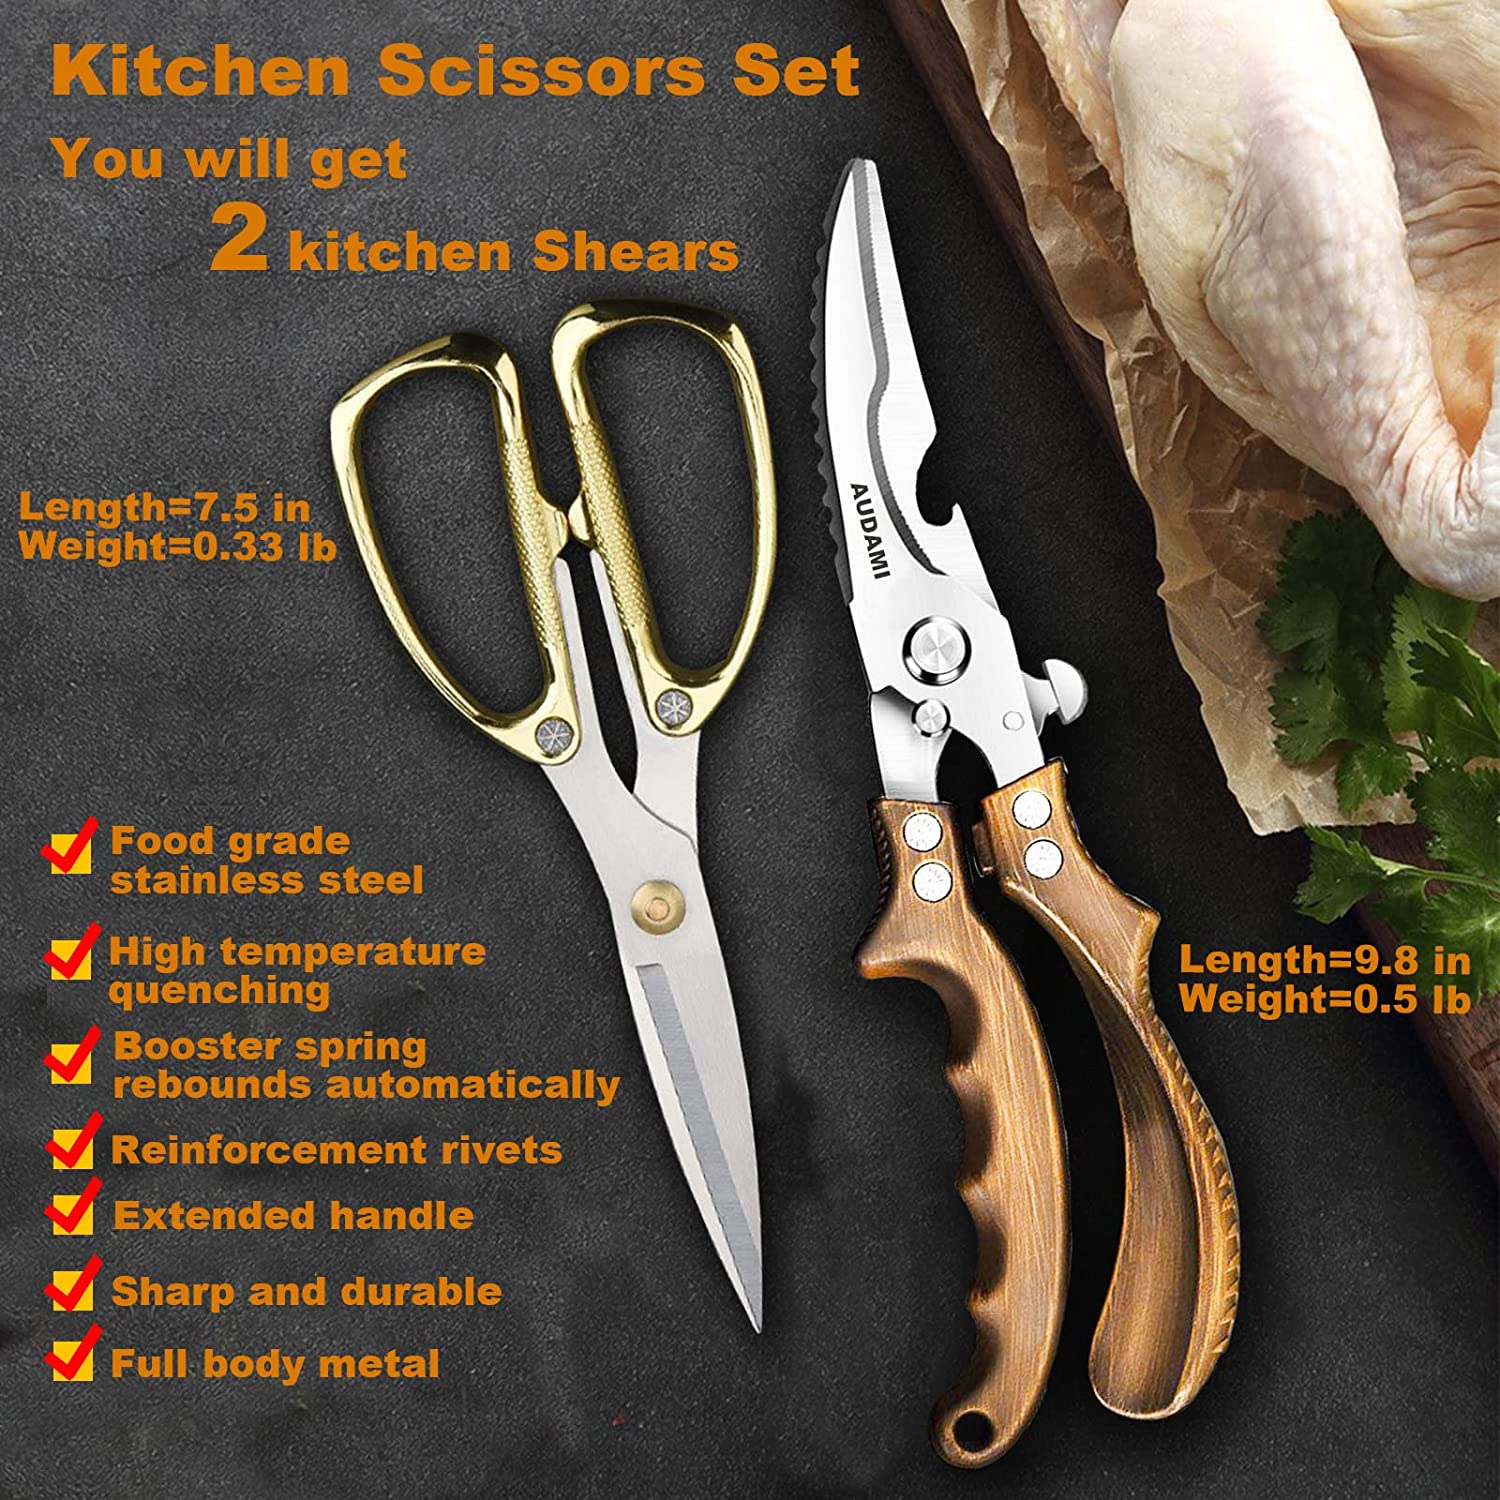 Kitchen Shears Heavy Duty Kitchen Scissors Set 2-Pack,Poultry Shears Heavy Duty Professional